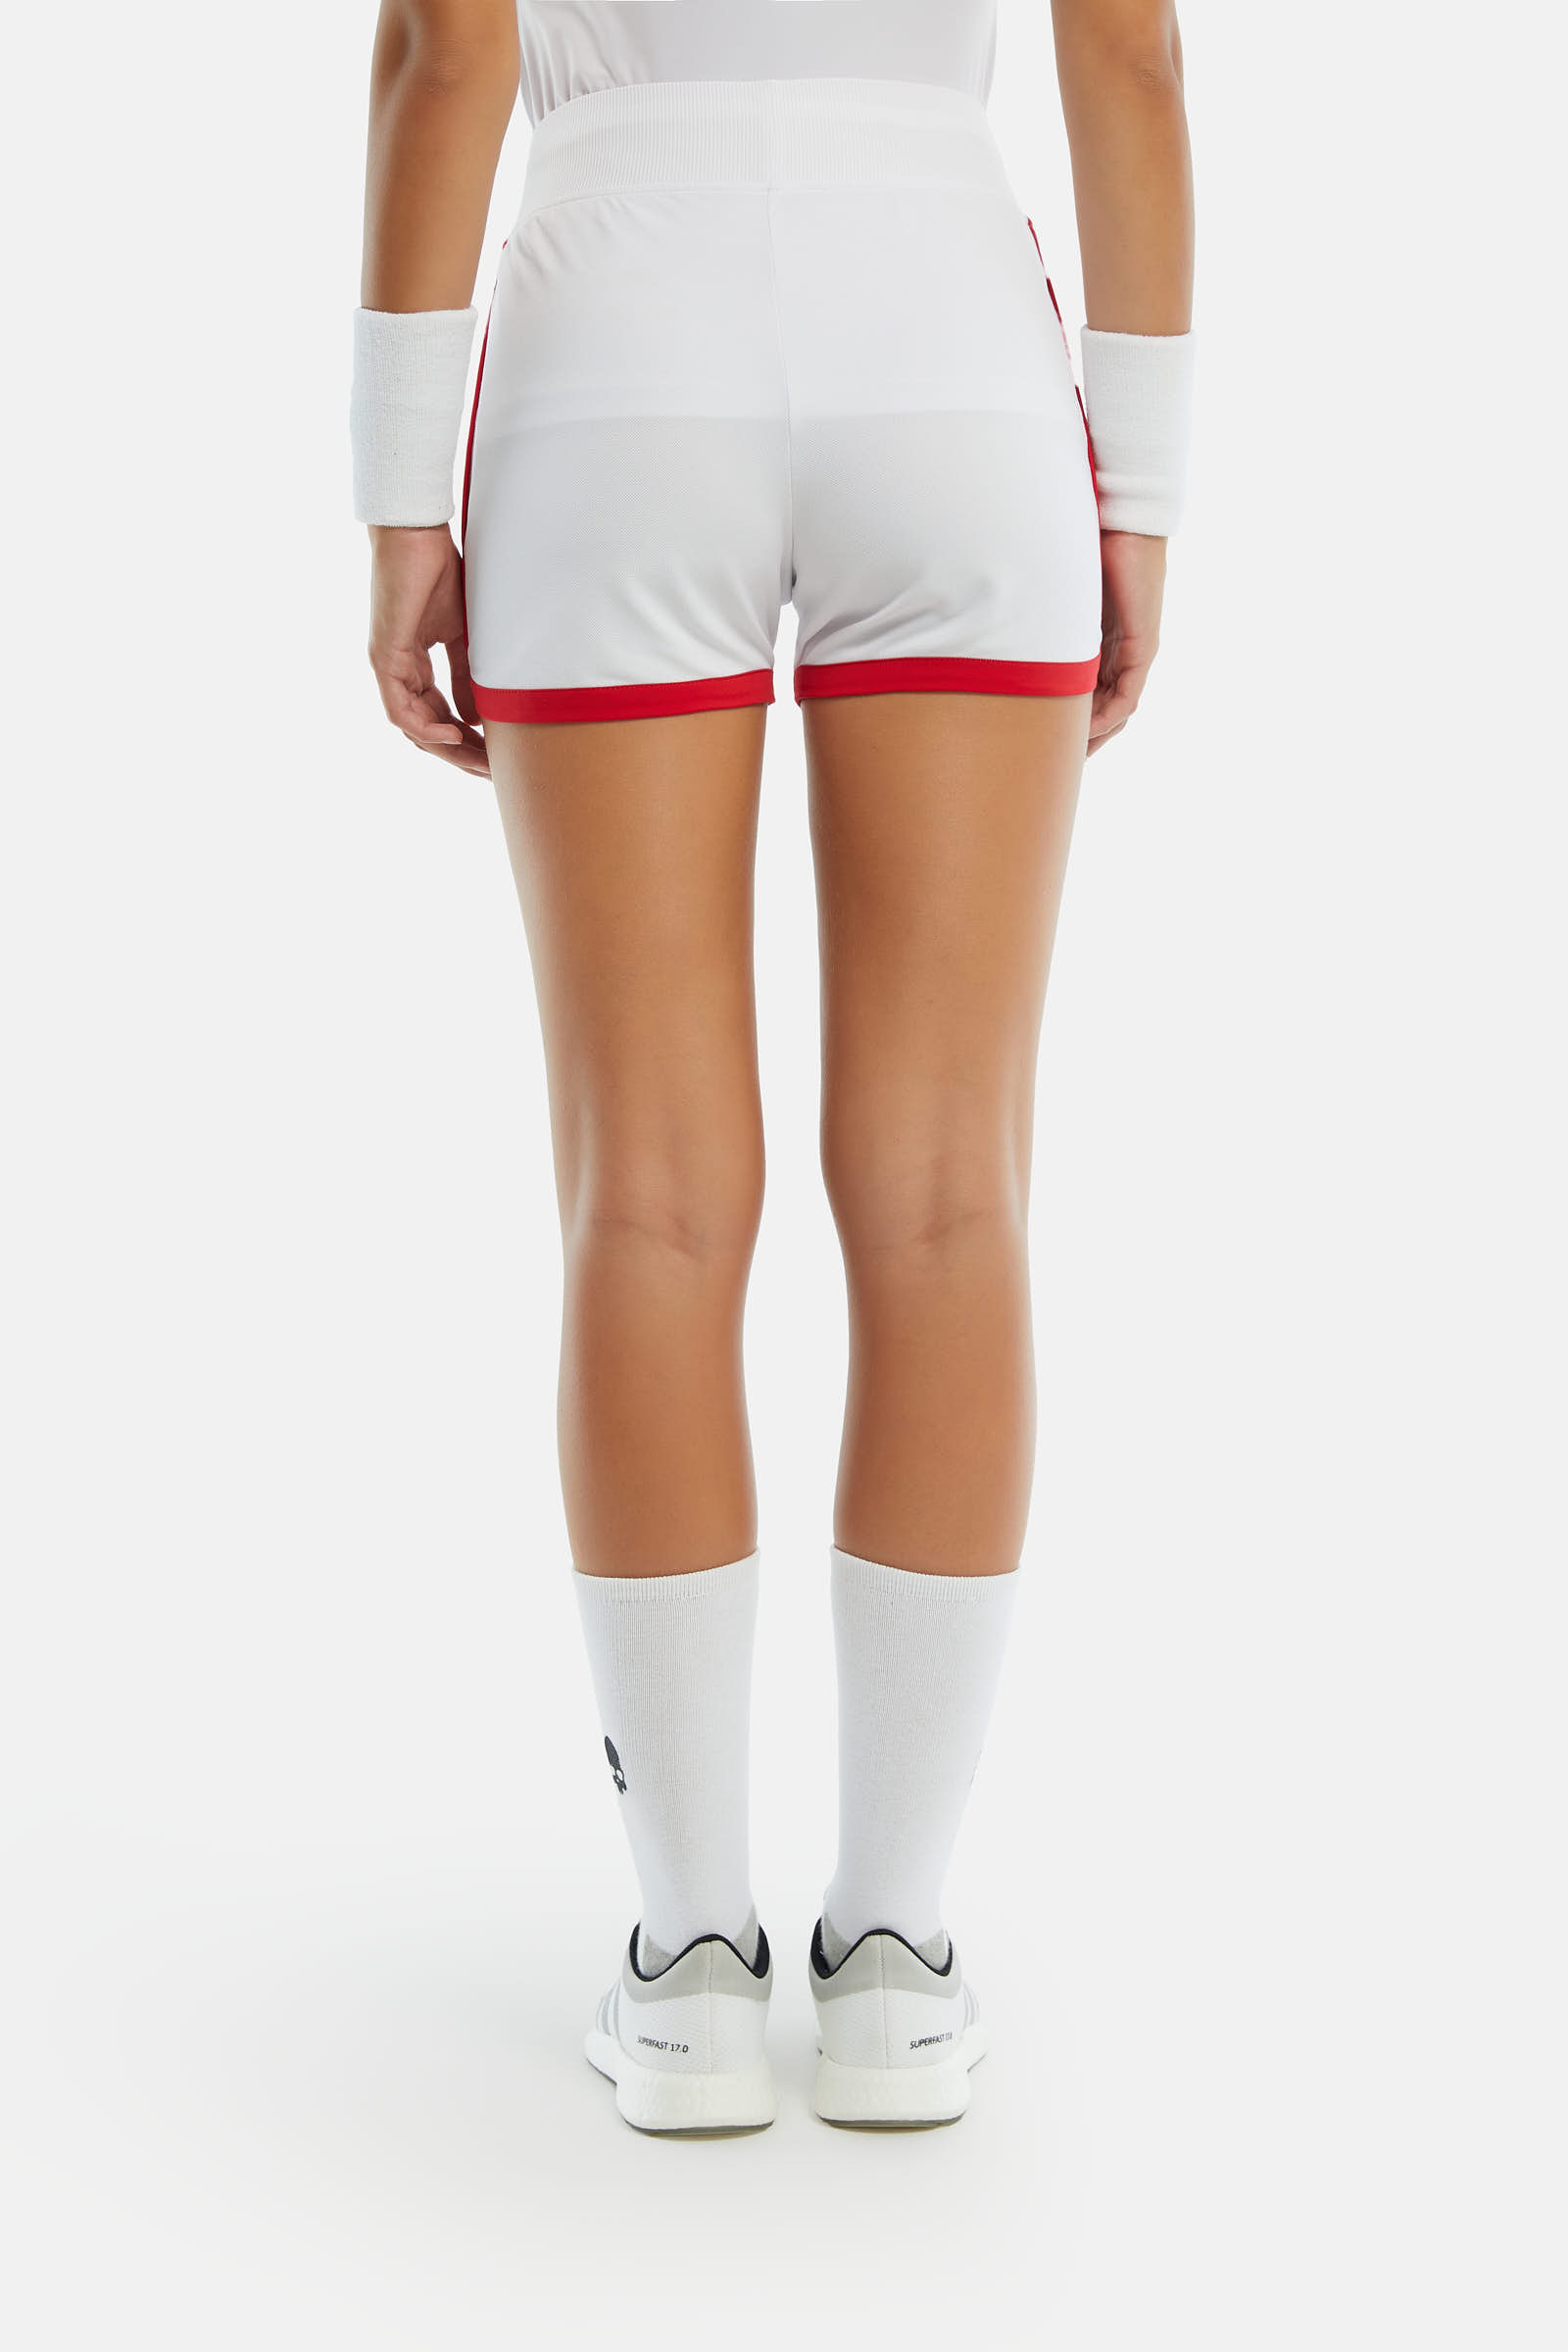 PANTALONCINO TECNICO - WHITE,RED - Abbigliamento sportivo | Hydrogen